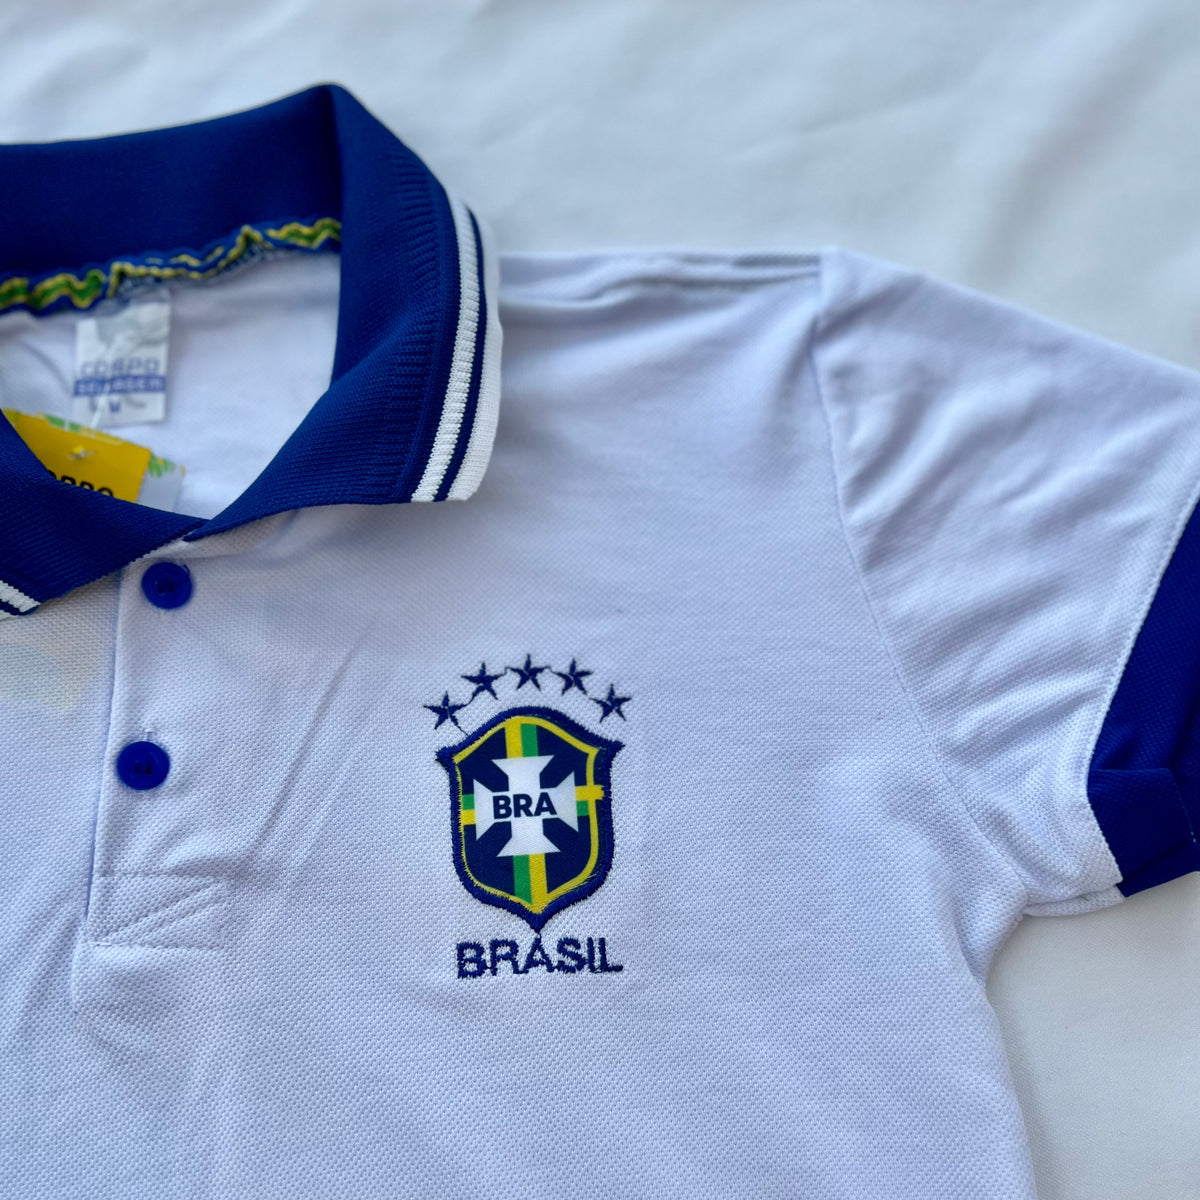 Brazil Copa America 2019 white jersey